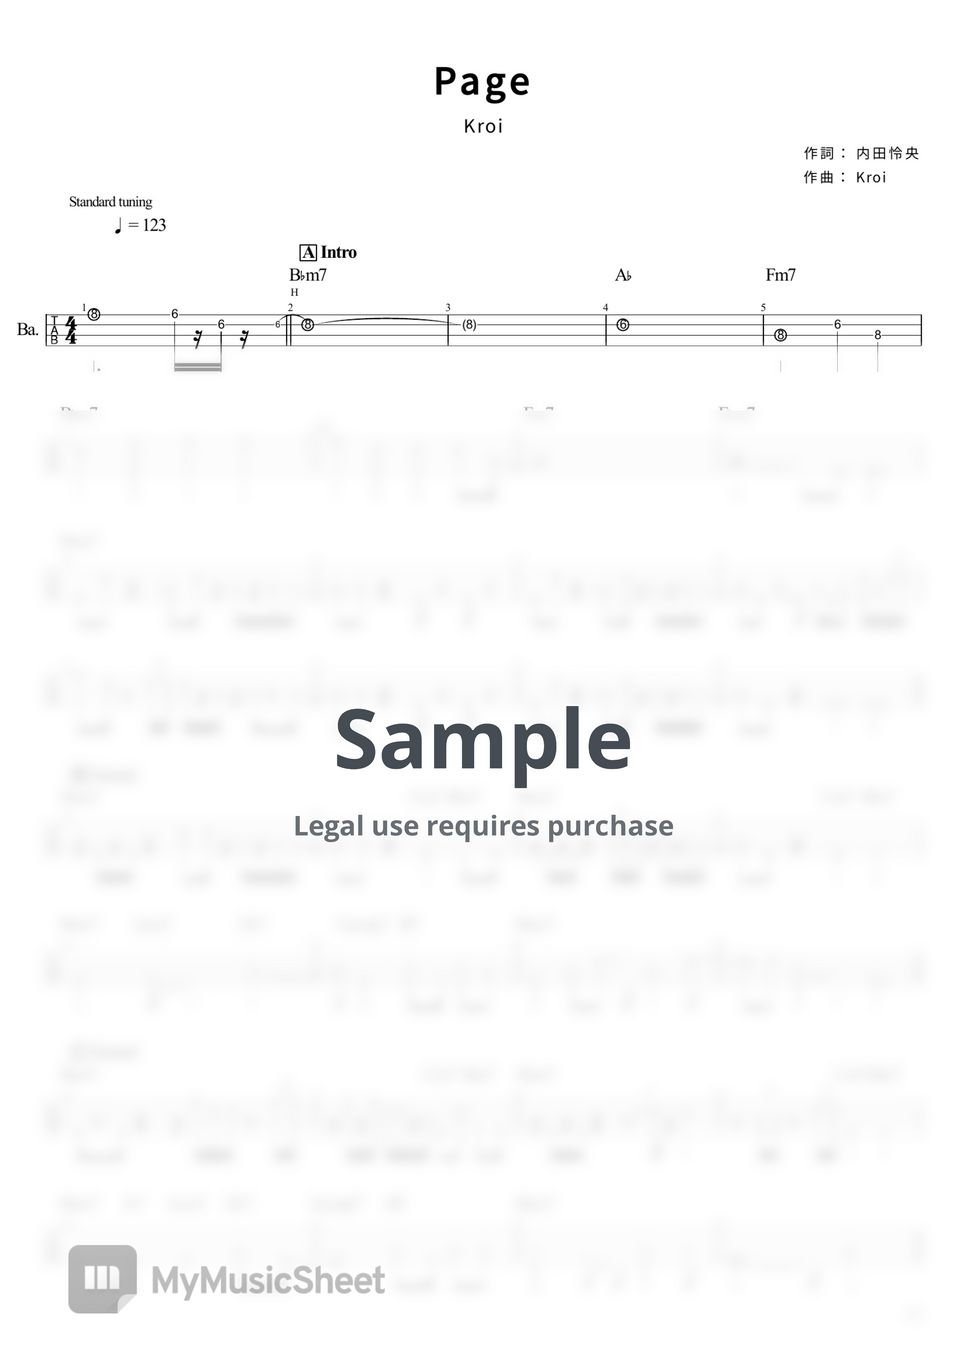 Kroi - Page (Tabのみ/ベース Tab譜 4弦) by T's bass score